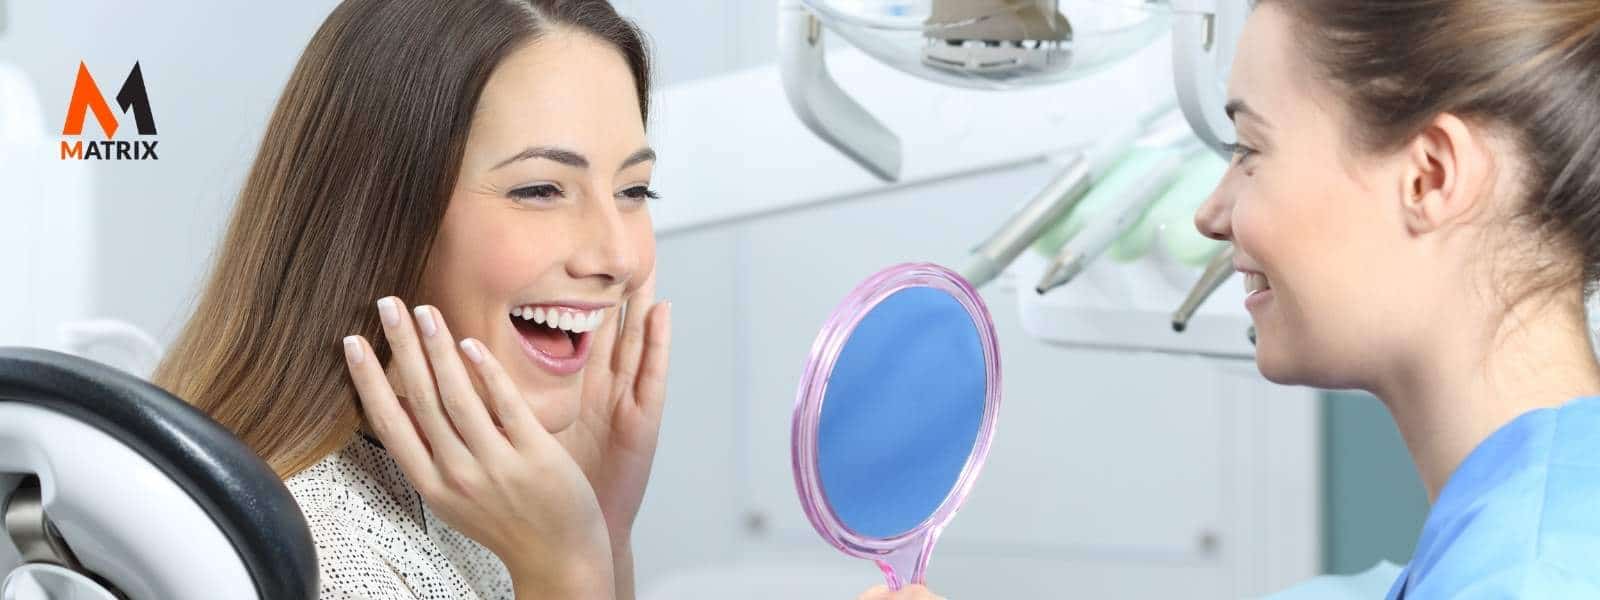 Dental SEO benefits dental professionals